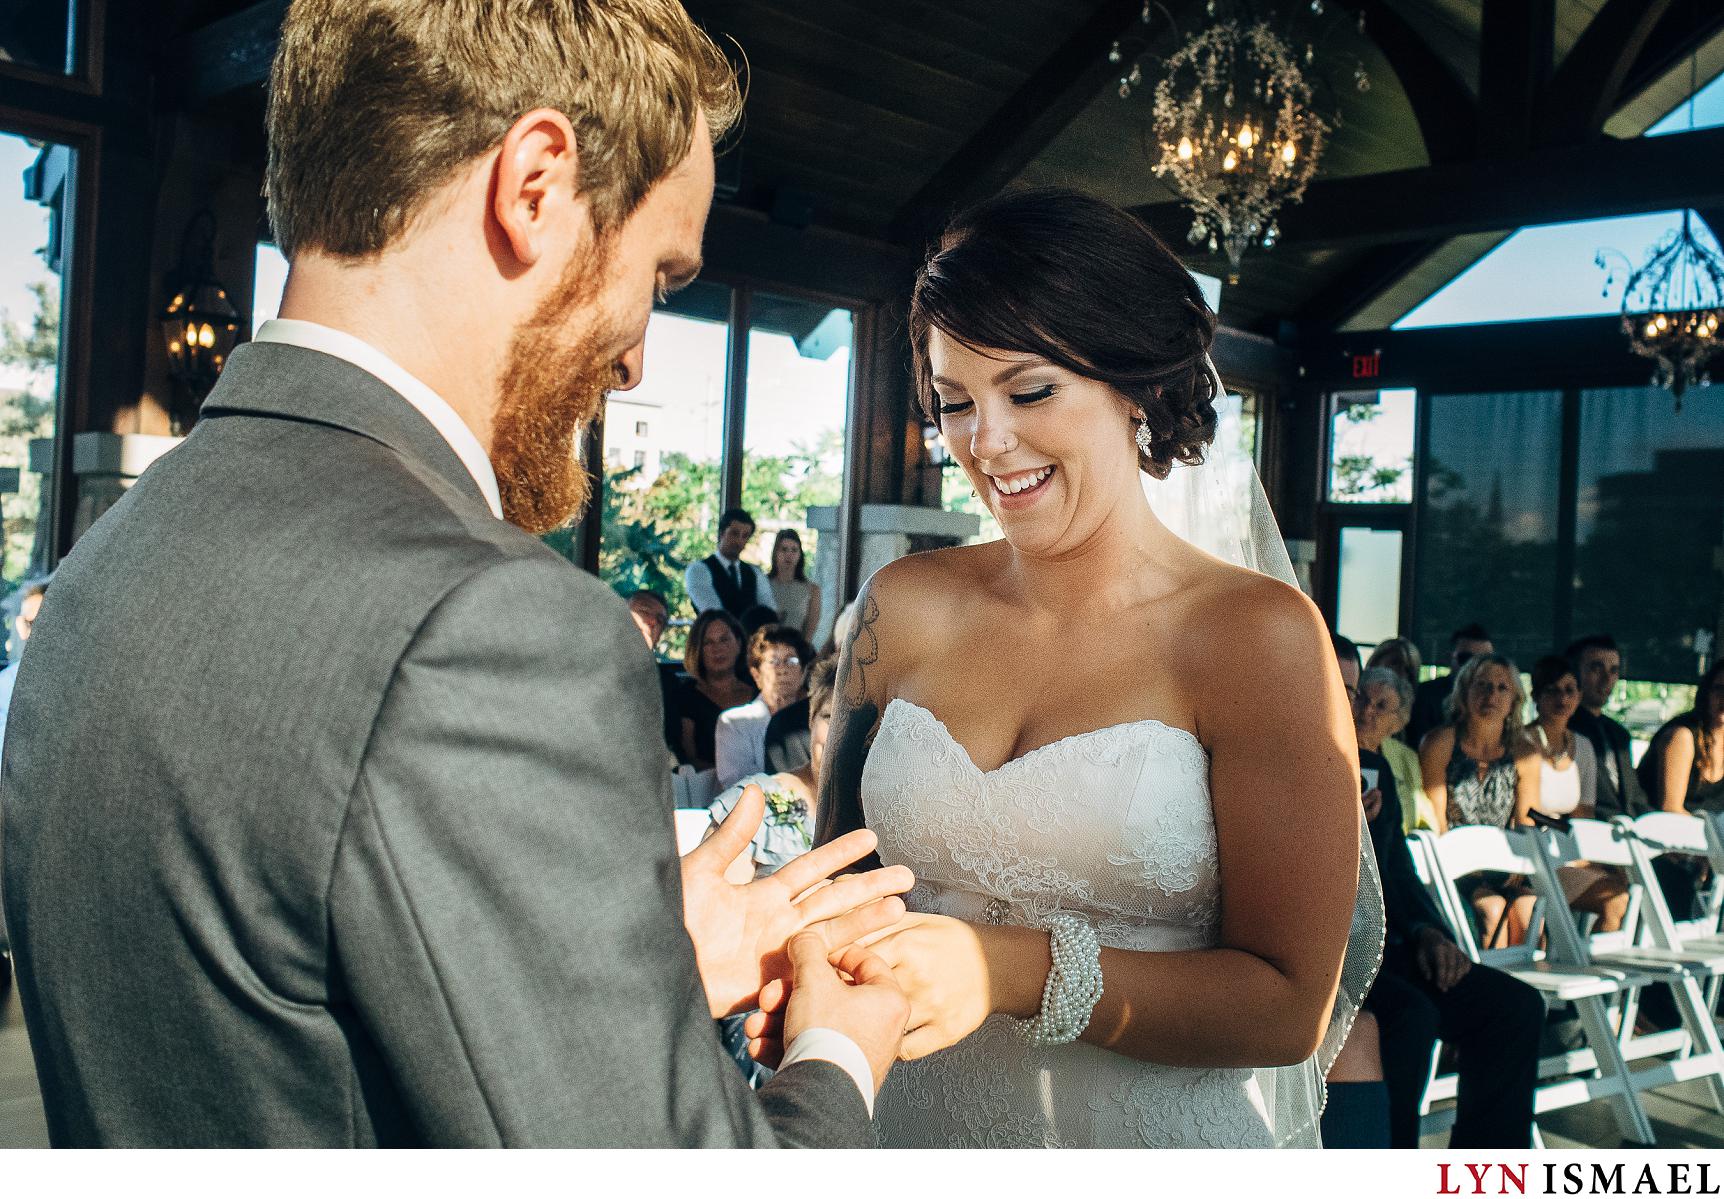 Bride and groom exchange rings at a Waterloo Region wedding.